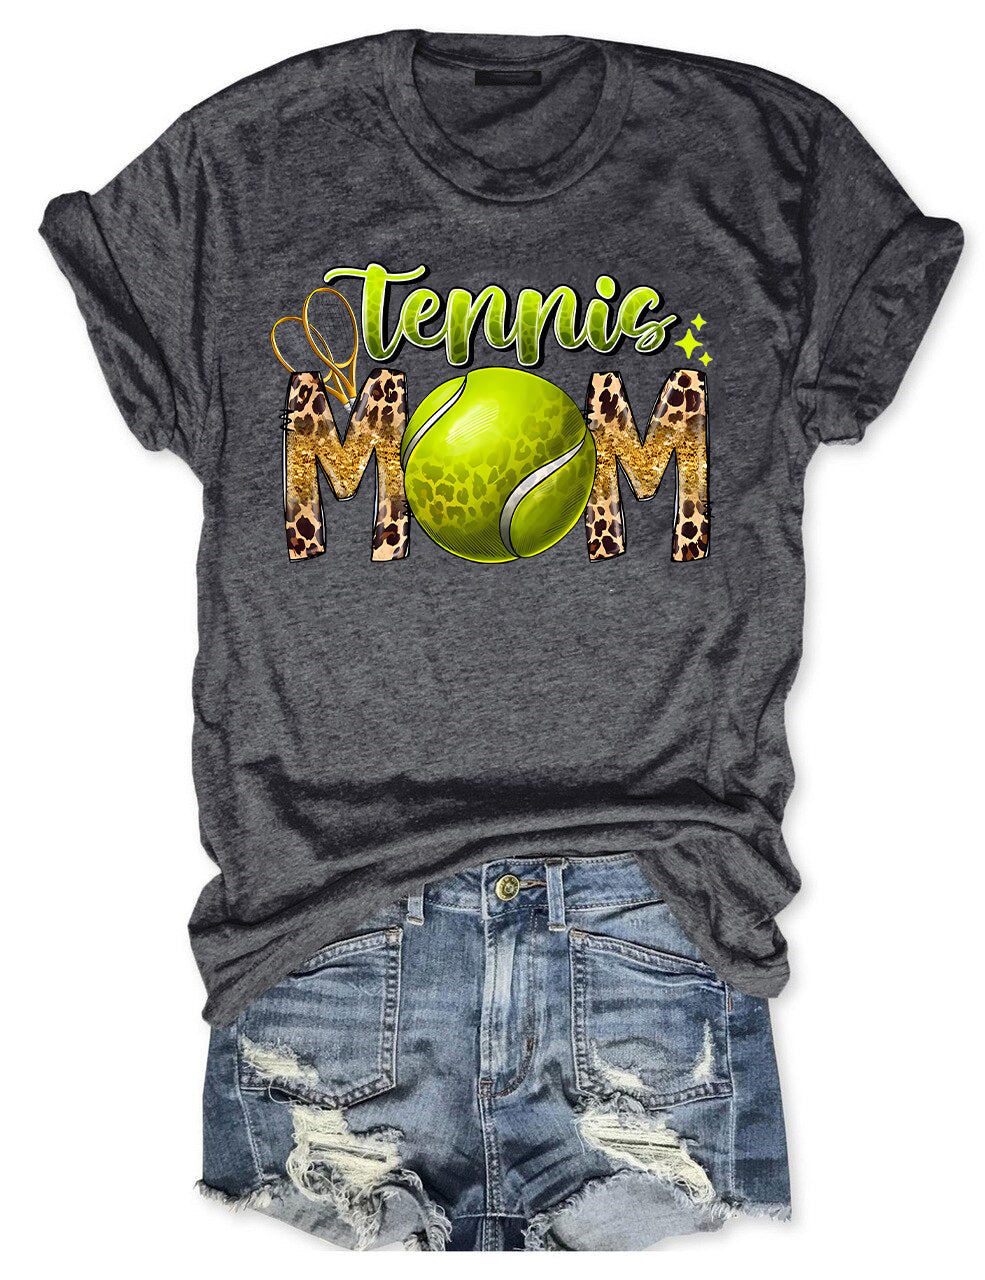 Tennis Mom T-shirt